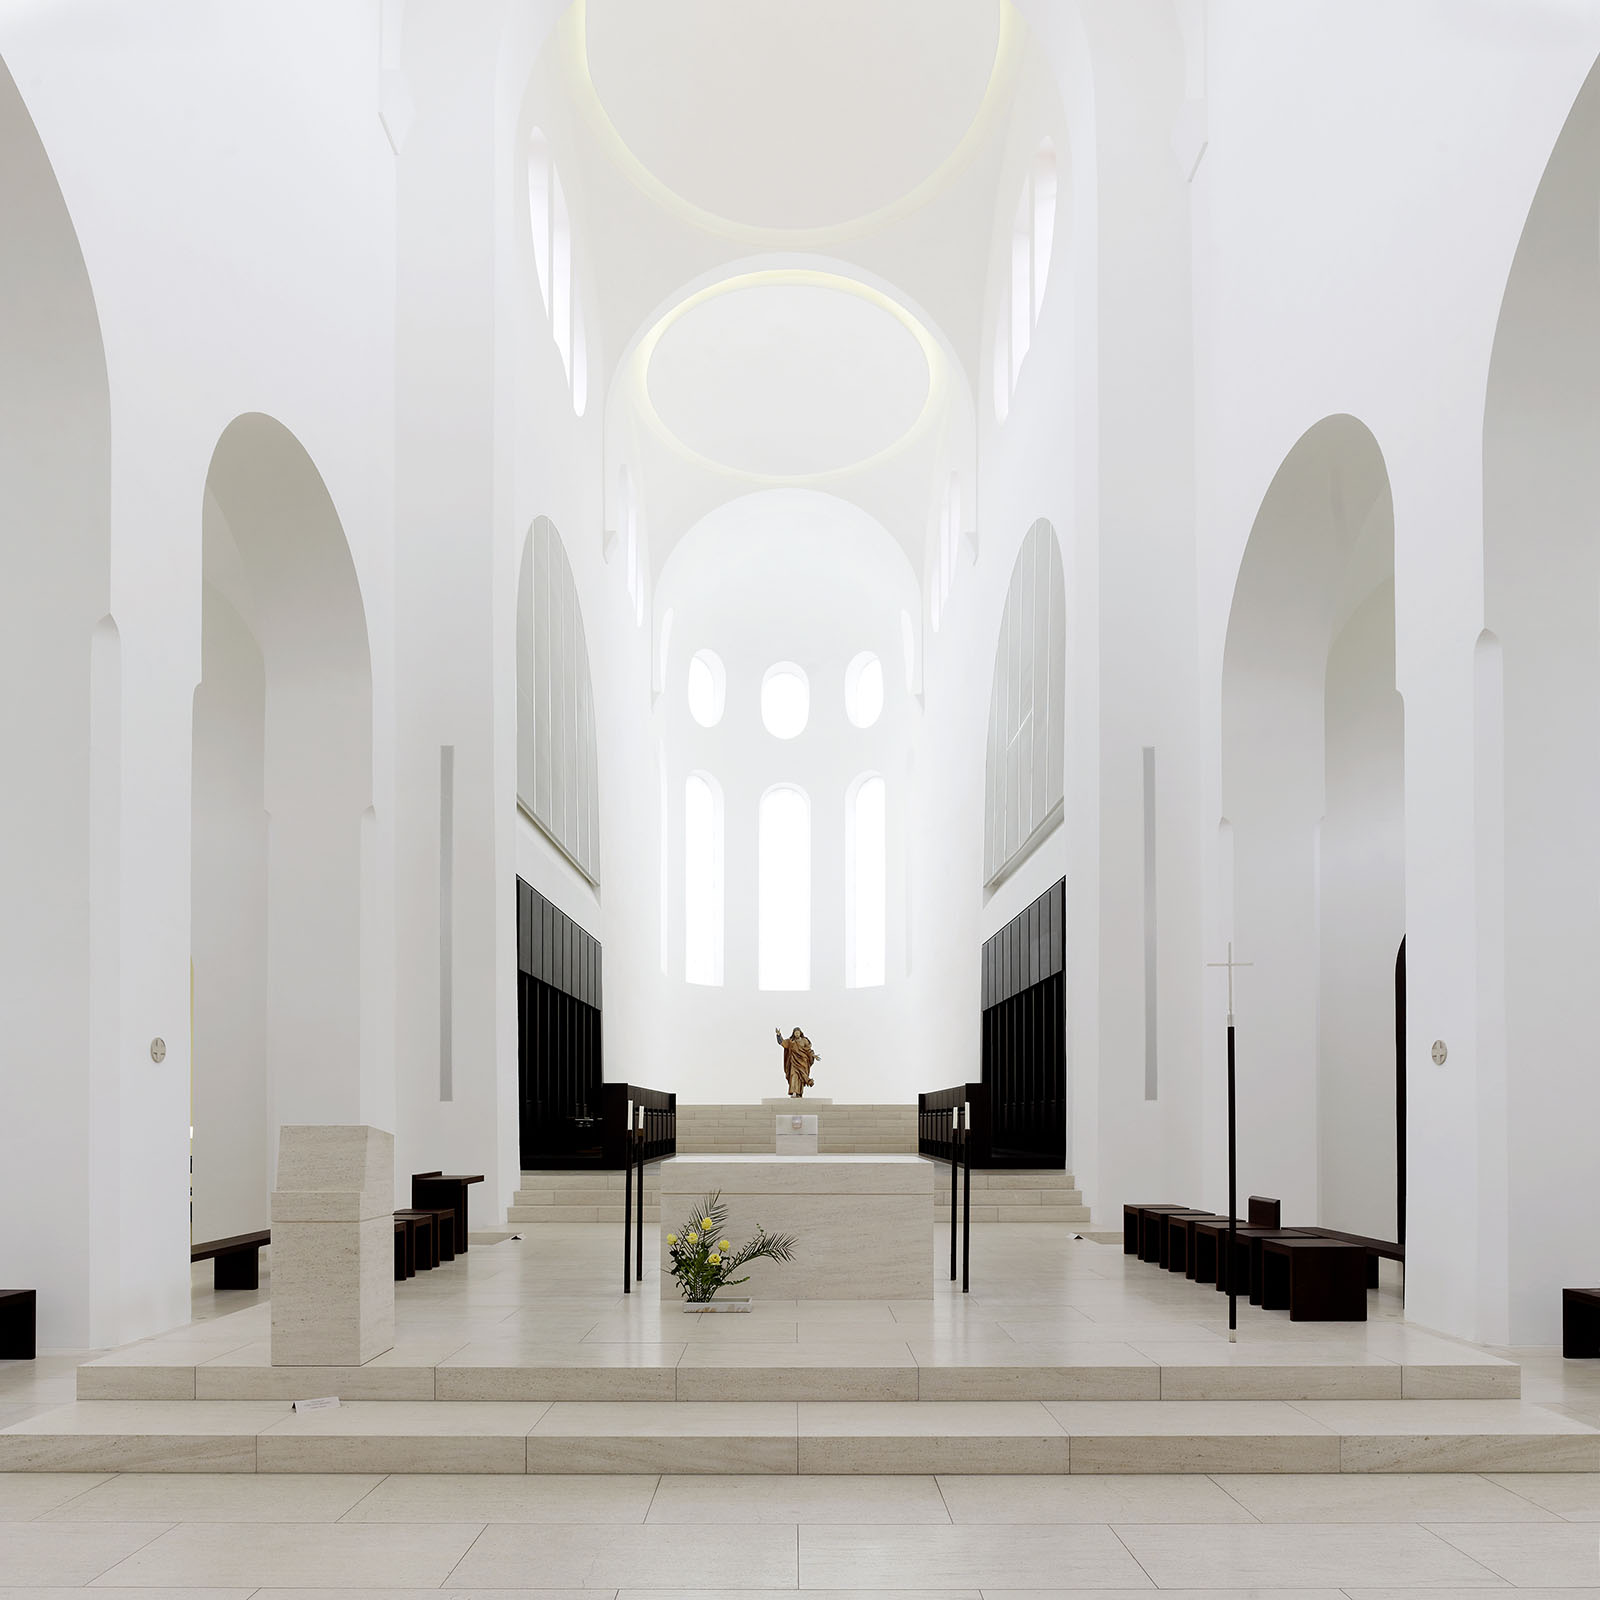 Moritzkirche von John Pawson aufgenommen in Augsburg 2013 Bild 2